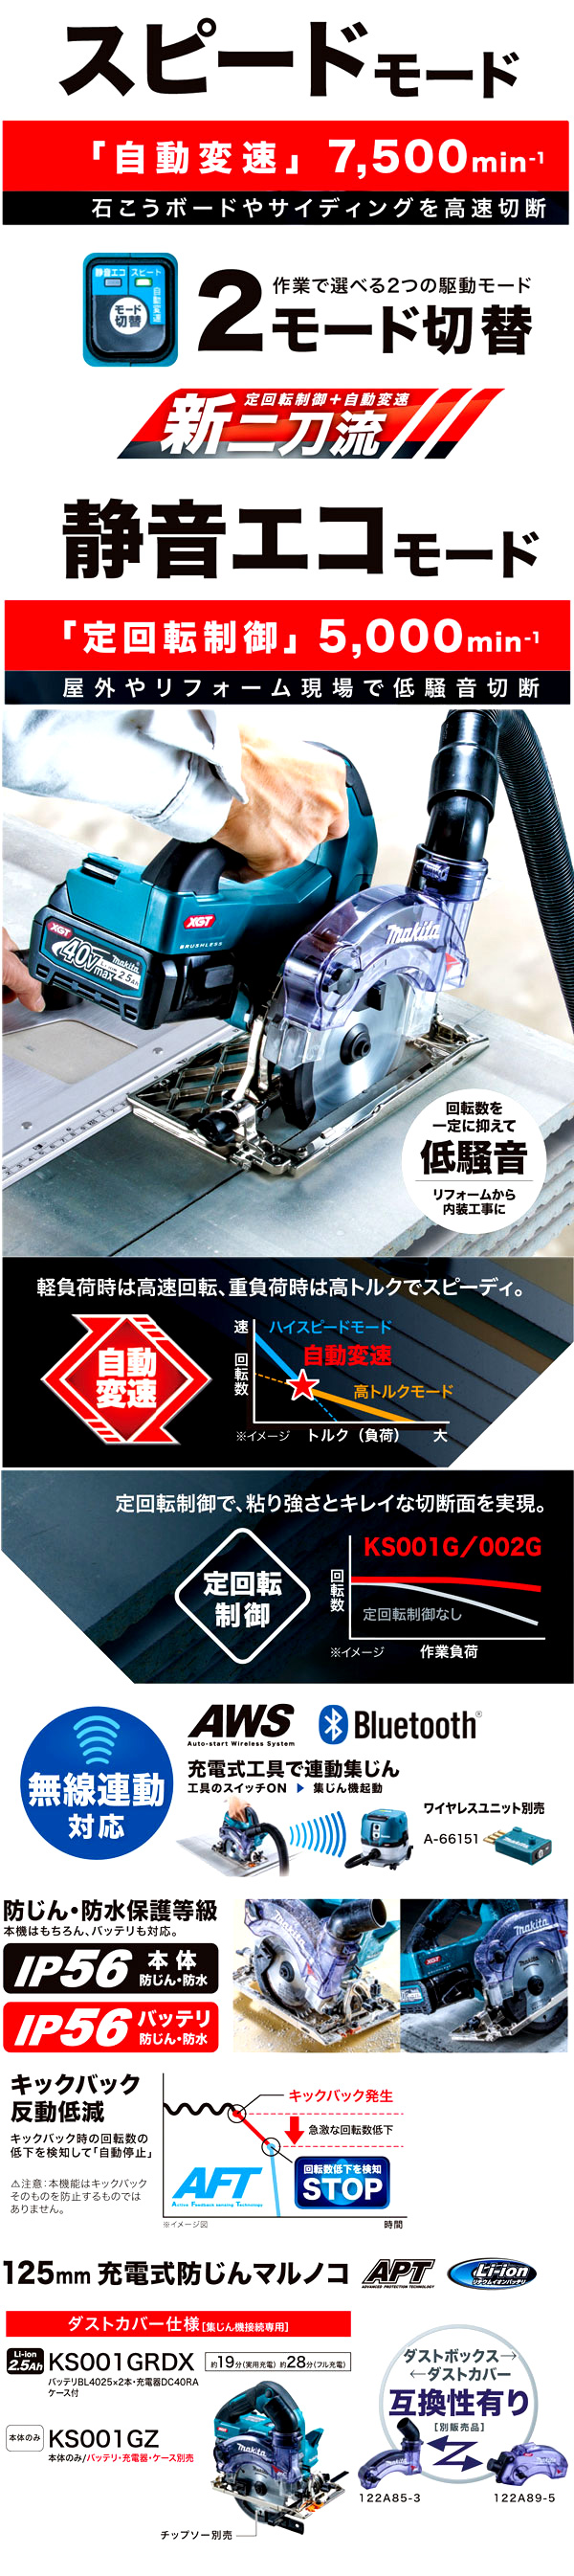 マキタ 125mm36V【2.5Ah電池付】40Vmax防じん丸ノコ(ダストカバー